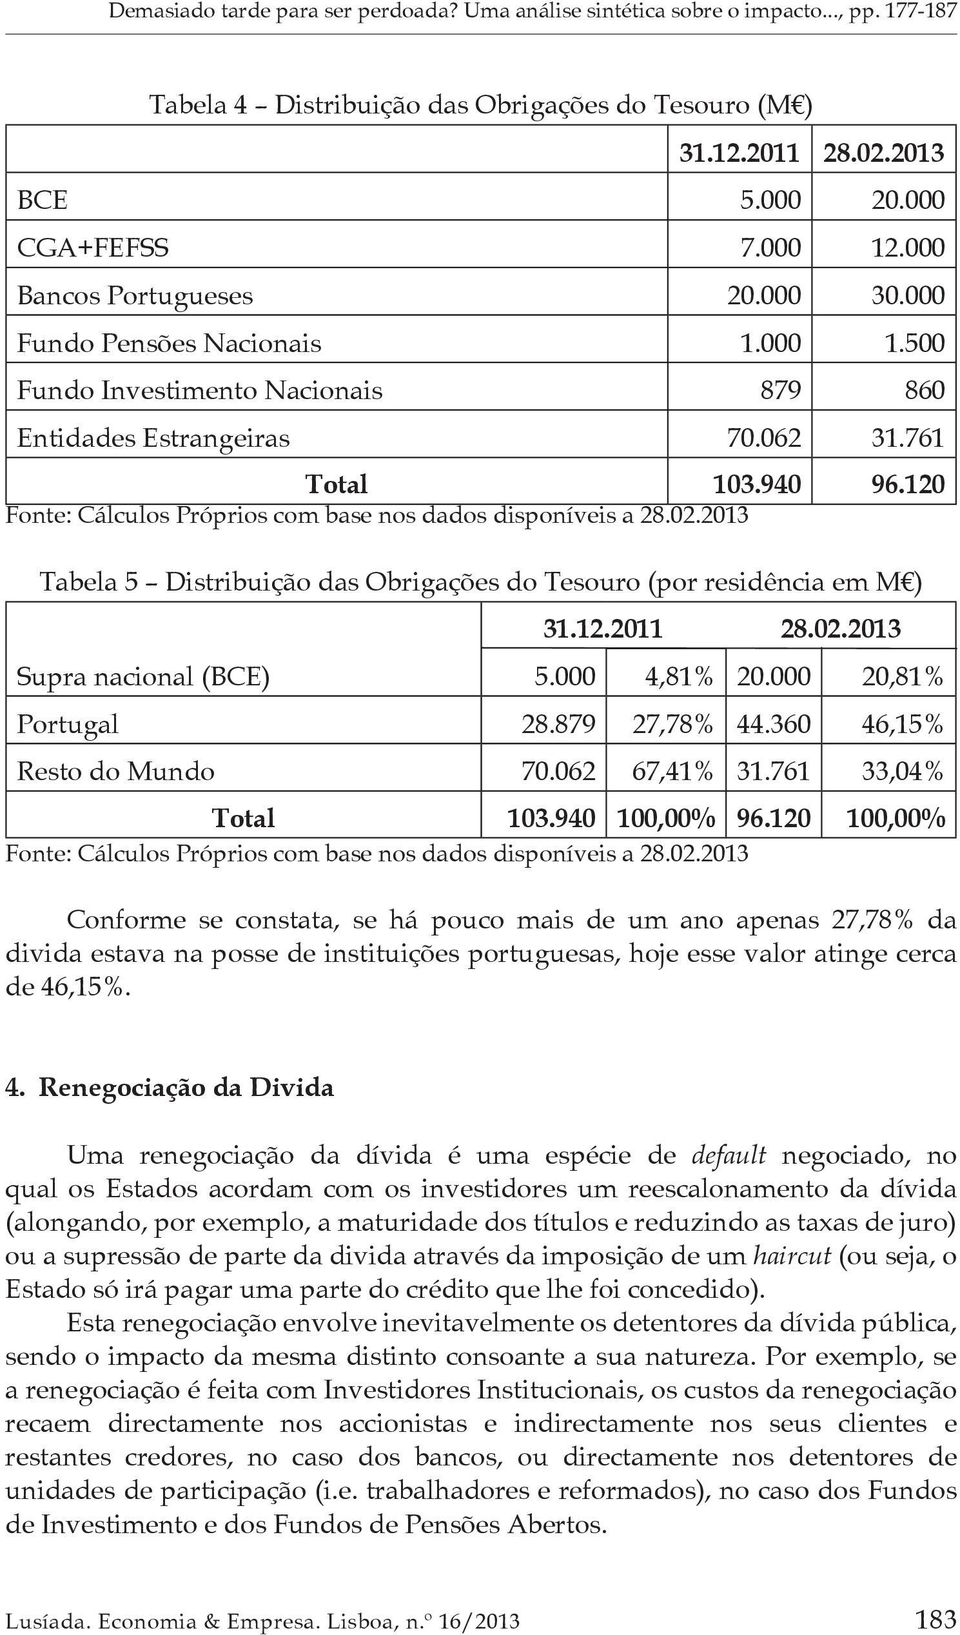 120 Tabela 5 Distribuição das Obrigações do Tesouro (por residência em M ) Supra nacional (BCE) 31.12.2011 28.02.2013 5.000 4,81% 20.000 20,81% Portugal 28.879 27,78% 44.360 46,15% Resto do Mundo 70.